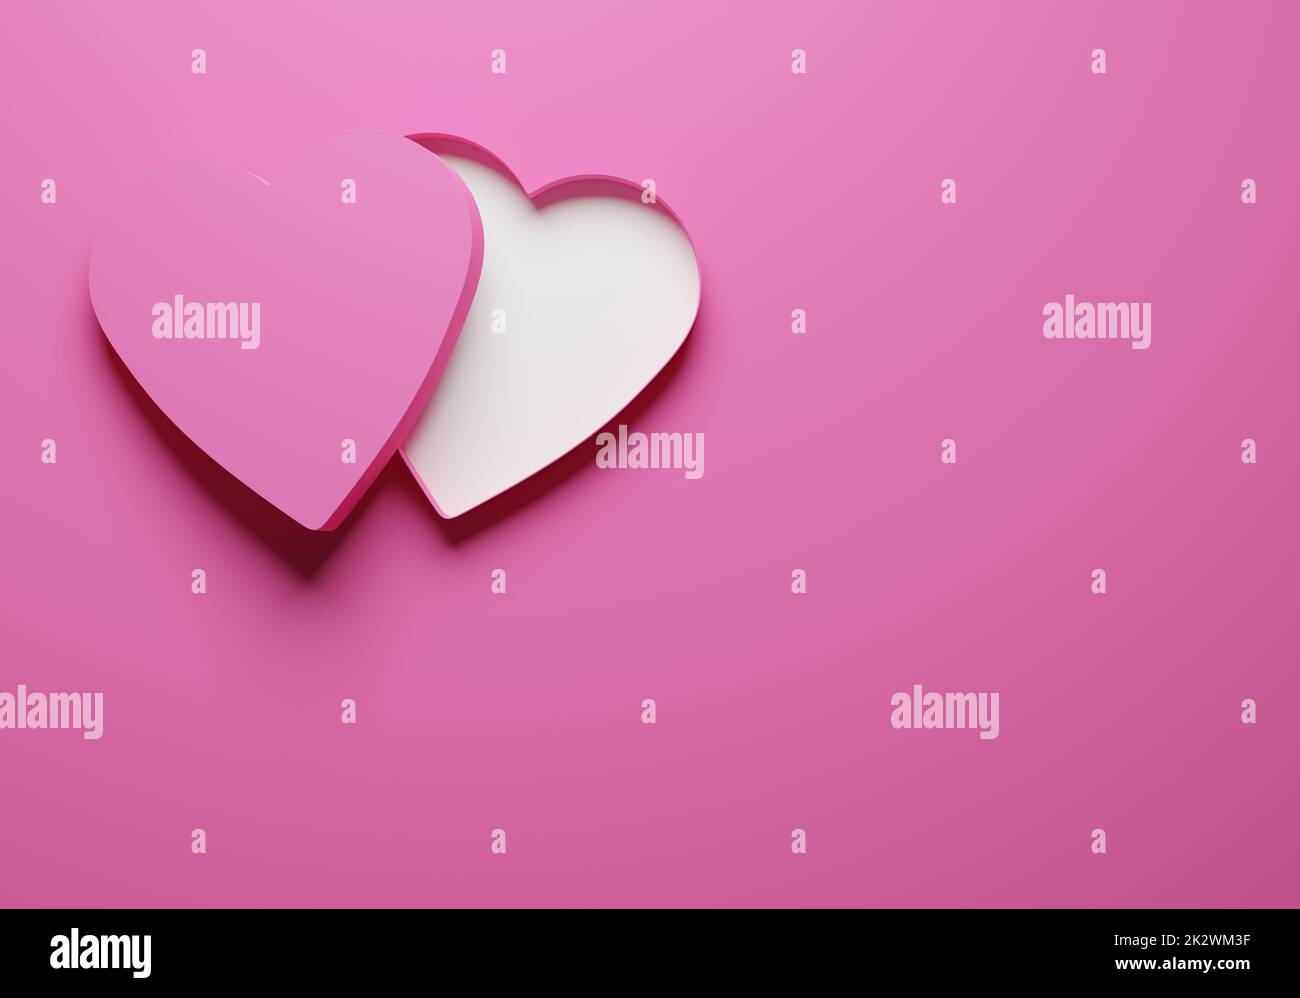 Offene rosafarbene Geschenkbox oder -Packung in Herzform auf pinkfarbenem Hintergrund Stockfoto